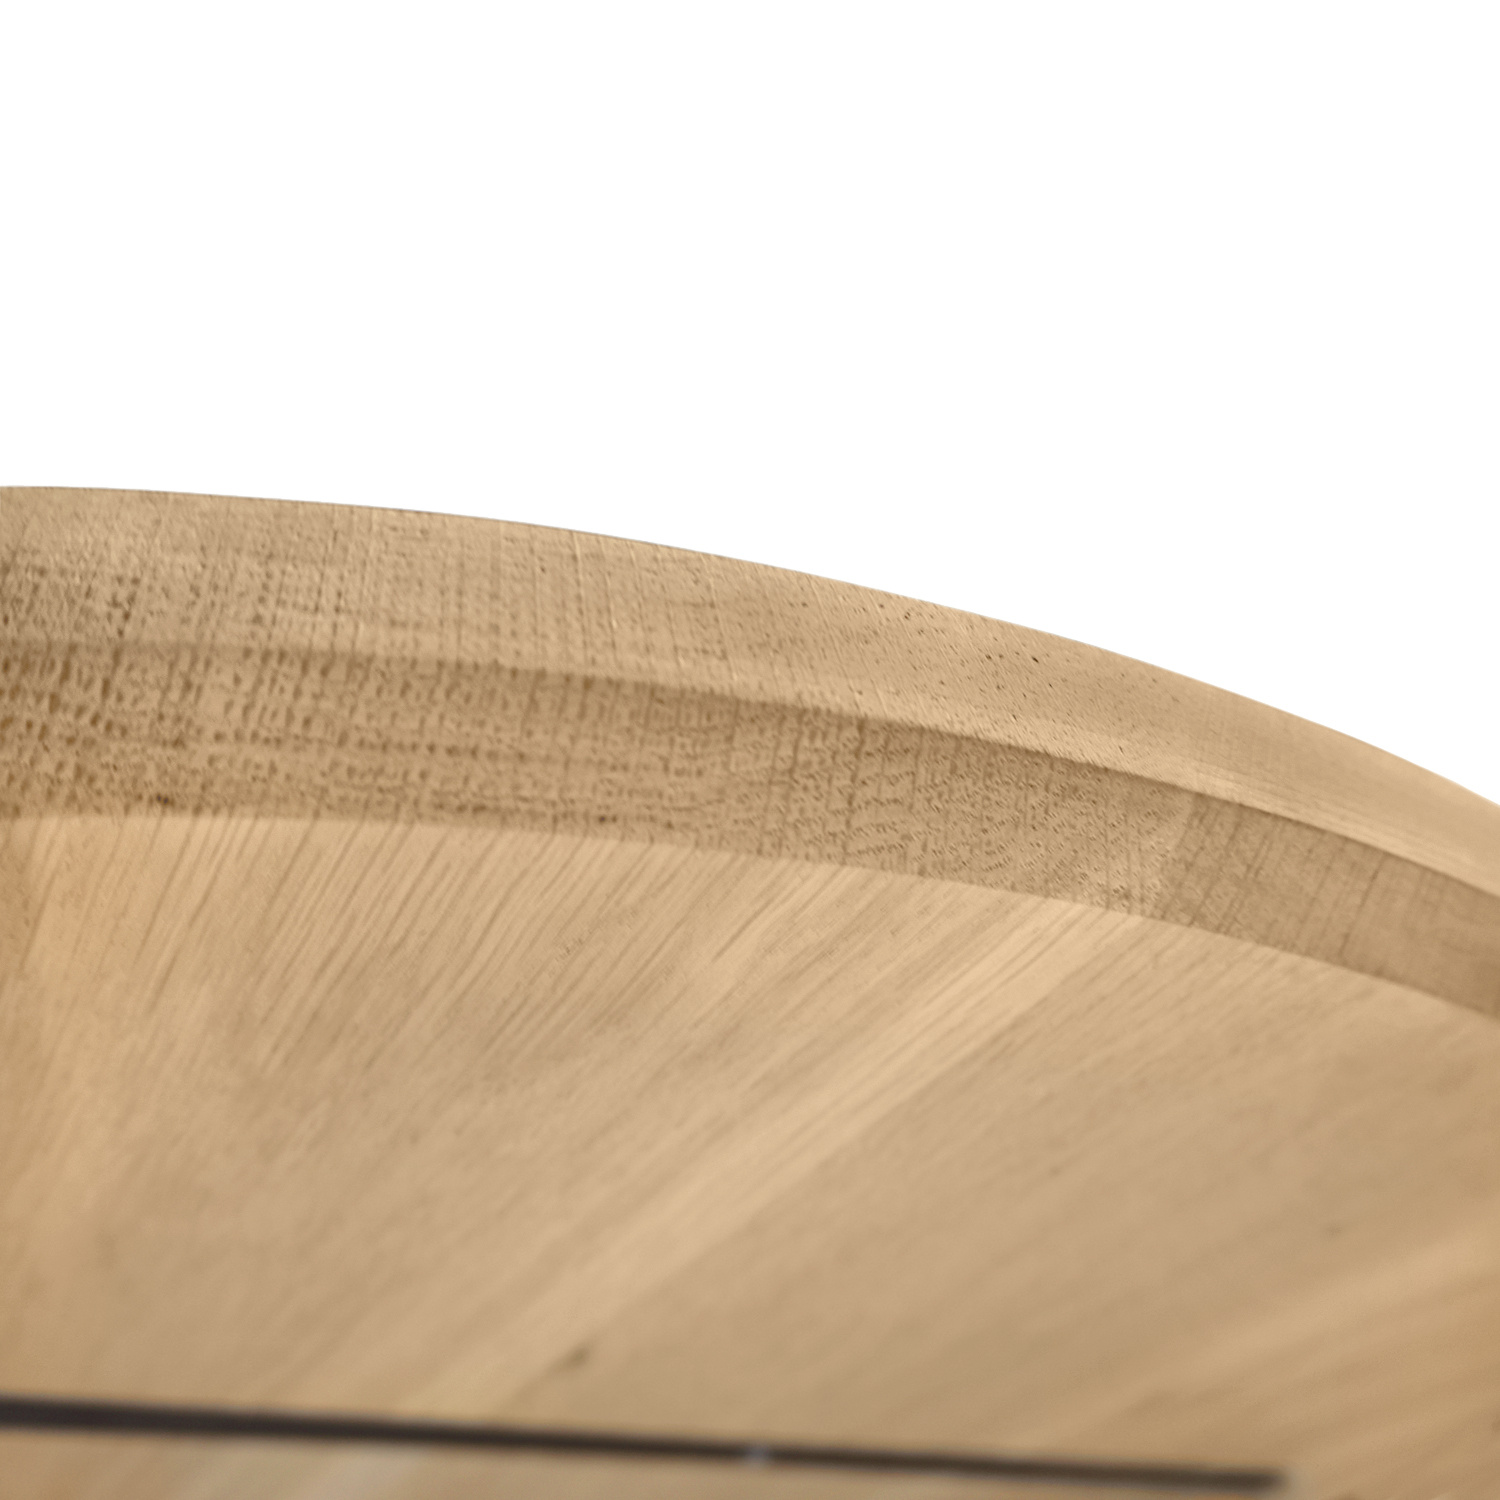  Ovaal eiken tafelblad - 3 cm dik (1-laag) - Diverse afmetingen - extra rustiek Europees eikenhout - met extra brede lamellen (circa 14-20 cm) - verlijmd kd 8-12%